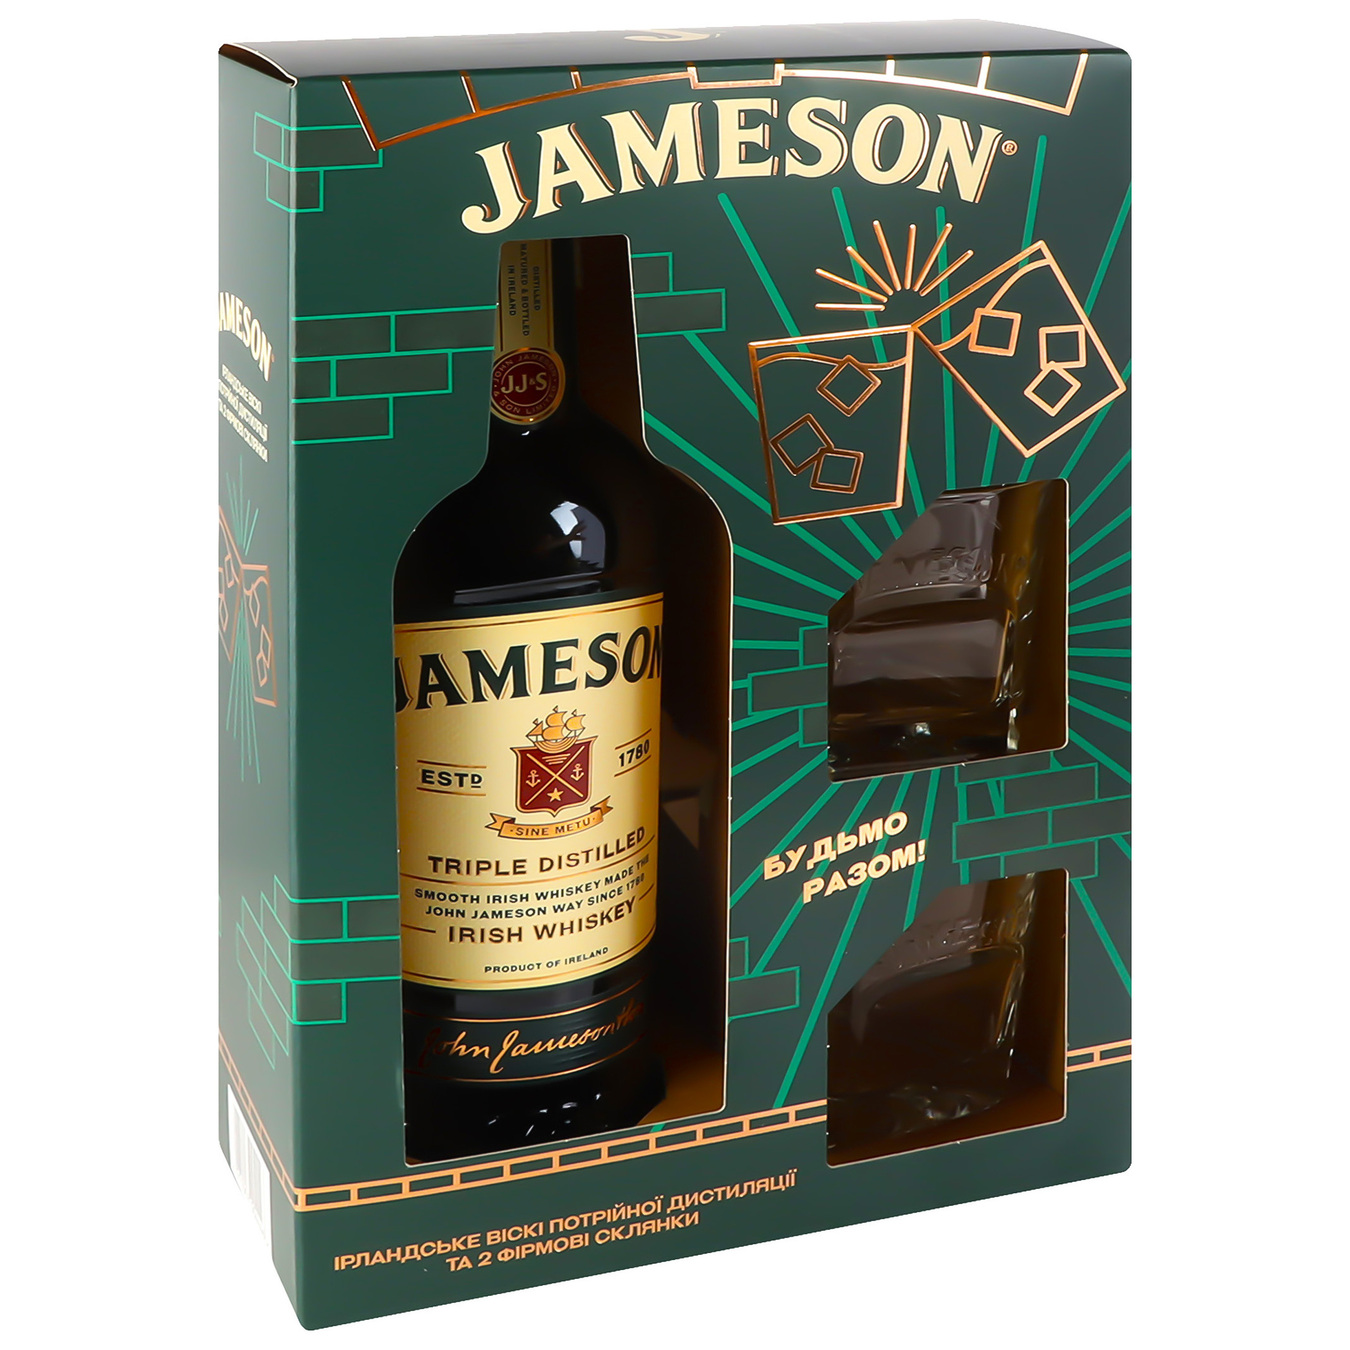 Jameson whiskey 40% 0.7l + 2 glasses 4